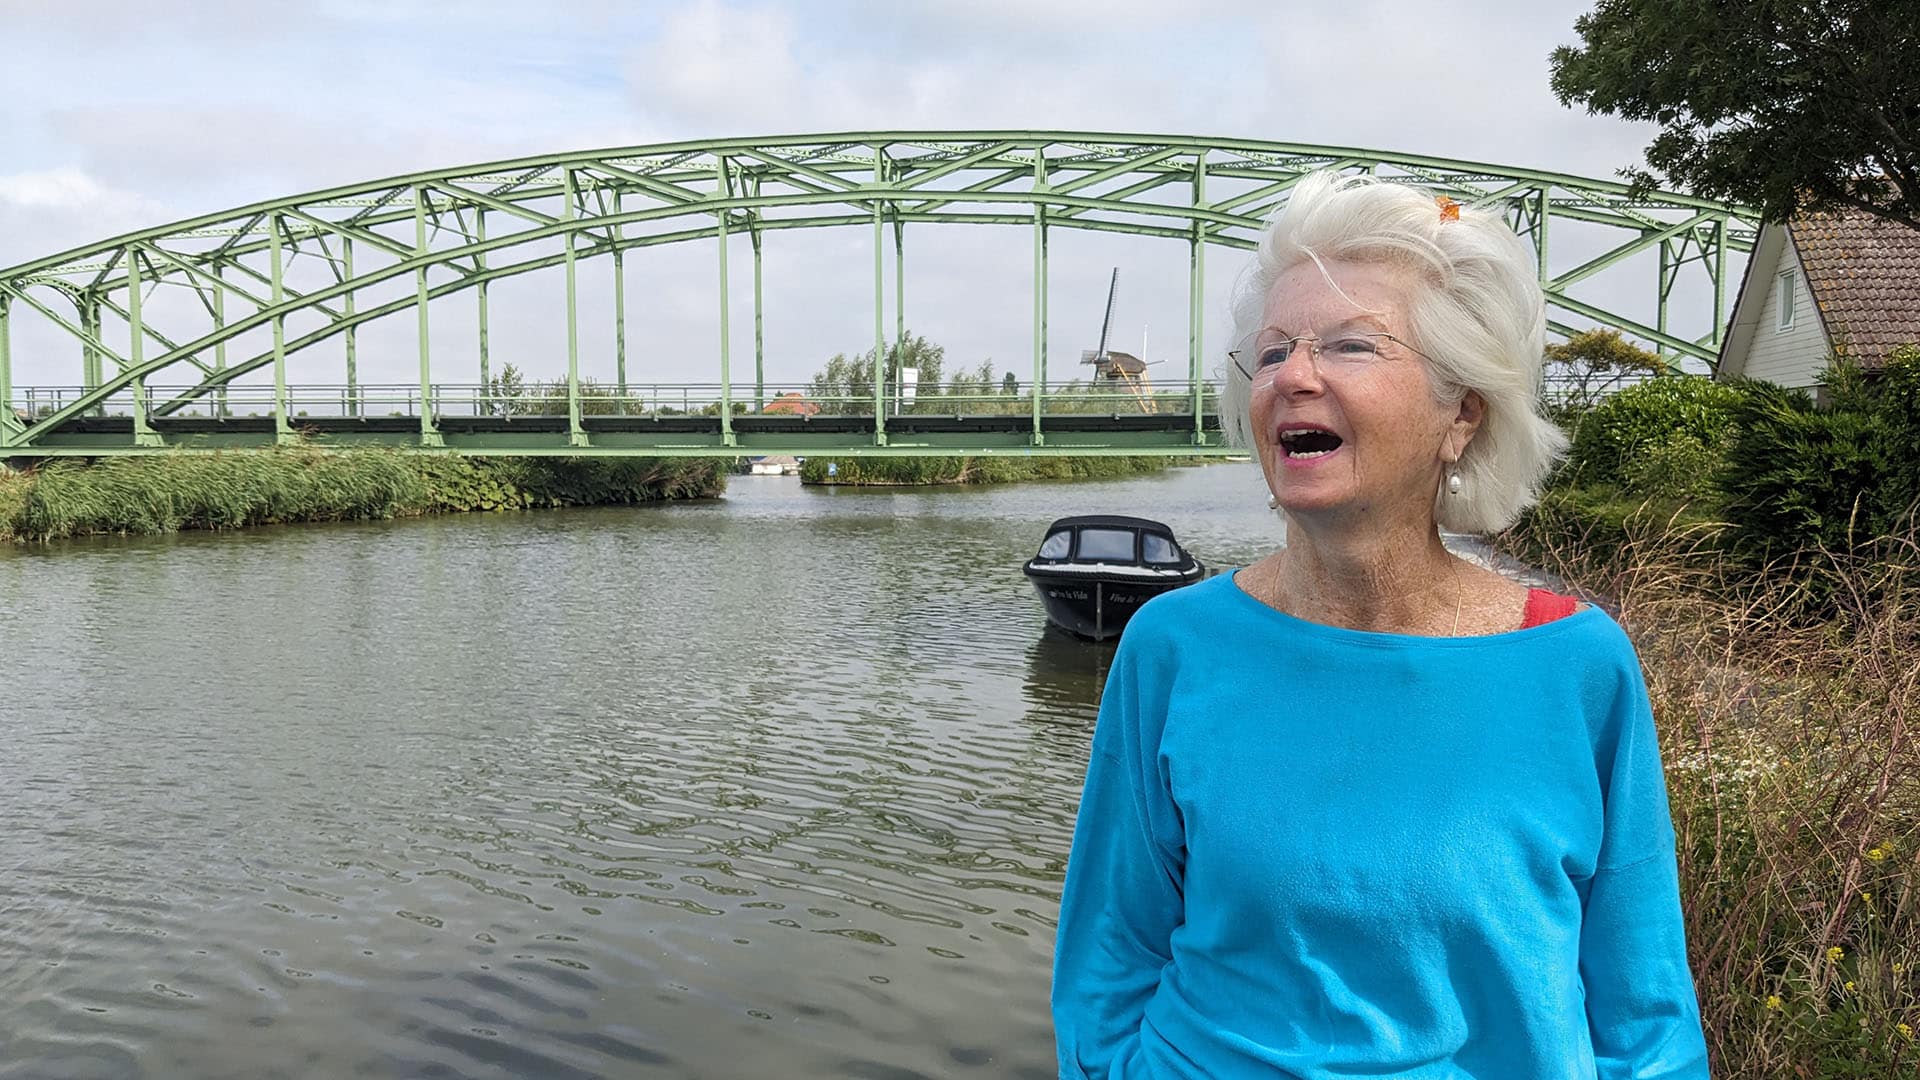 Annet Zwinkels lachend op de foto met in de achtergrond de Tramsbrug in Schipluiden in Midden-Delfland